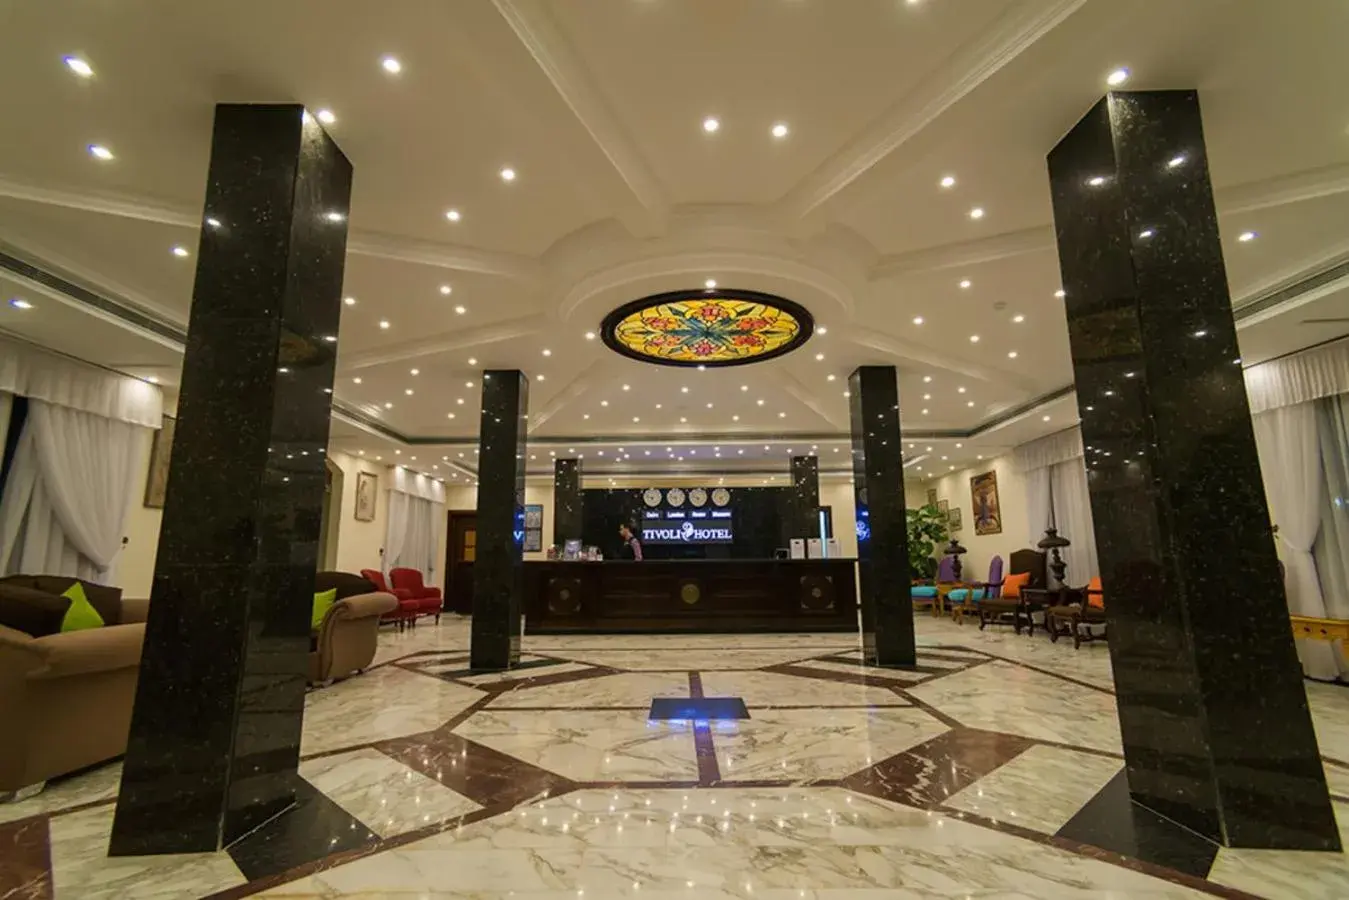 Lobby or reception in Tivoli Hotel Aqua Park